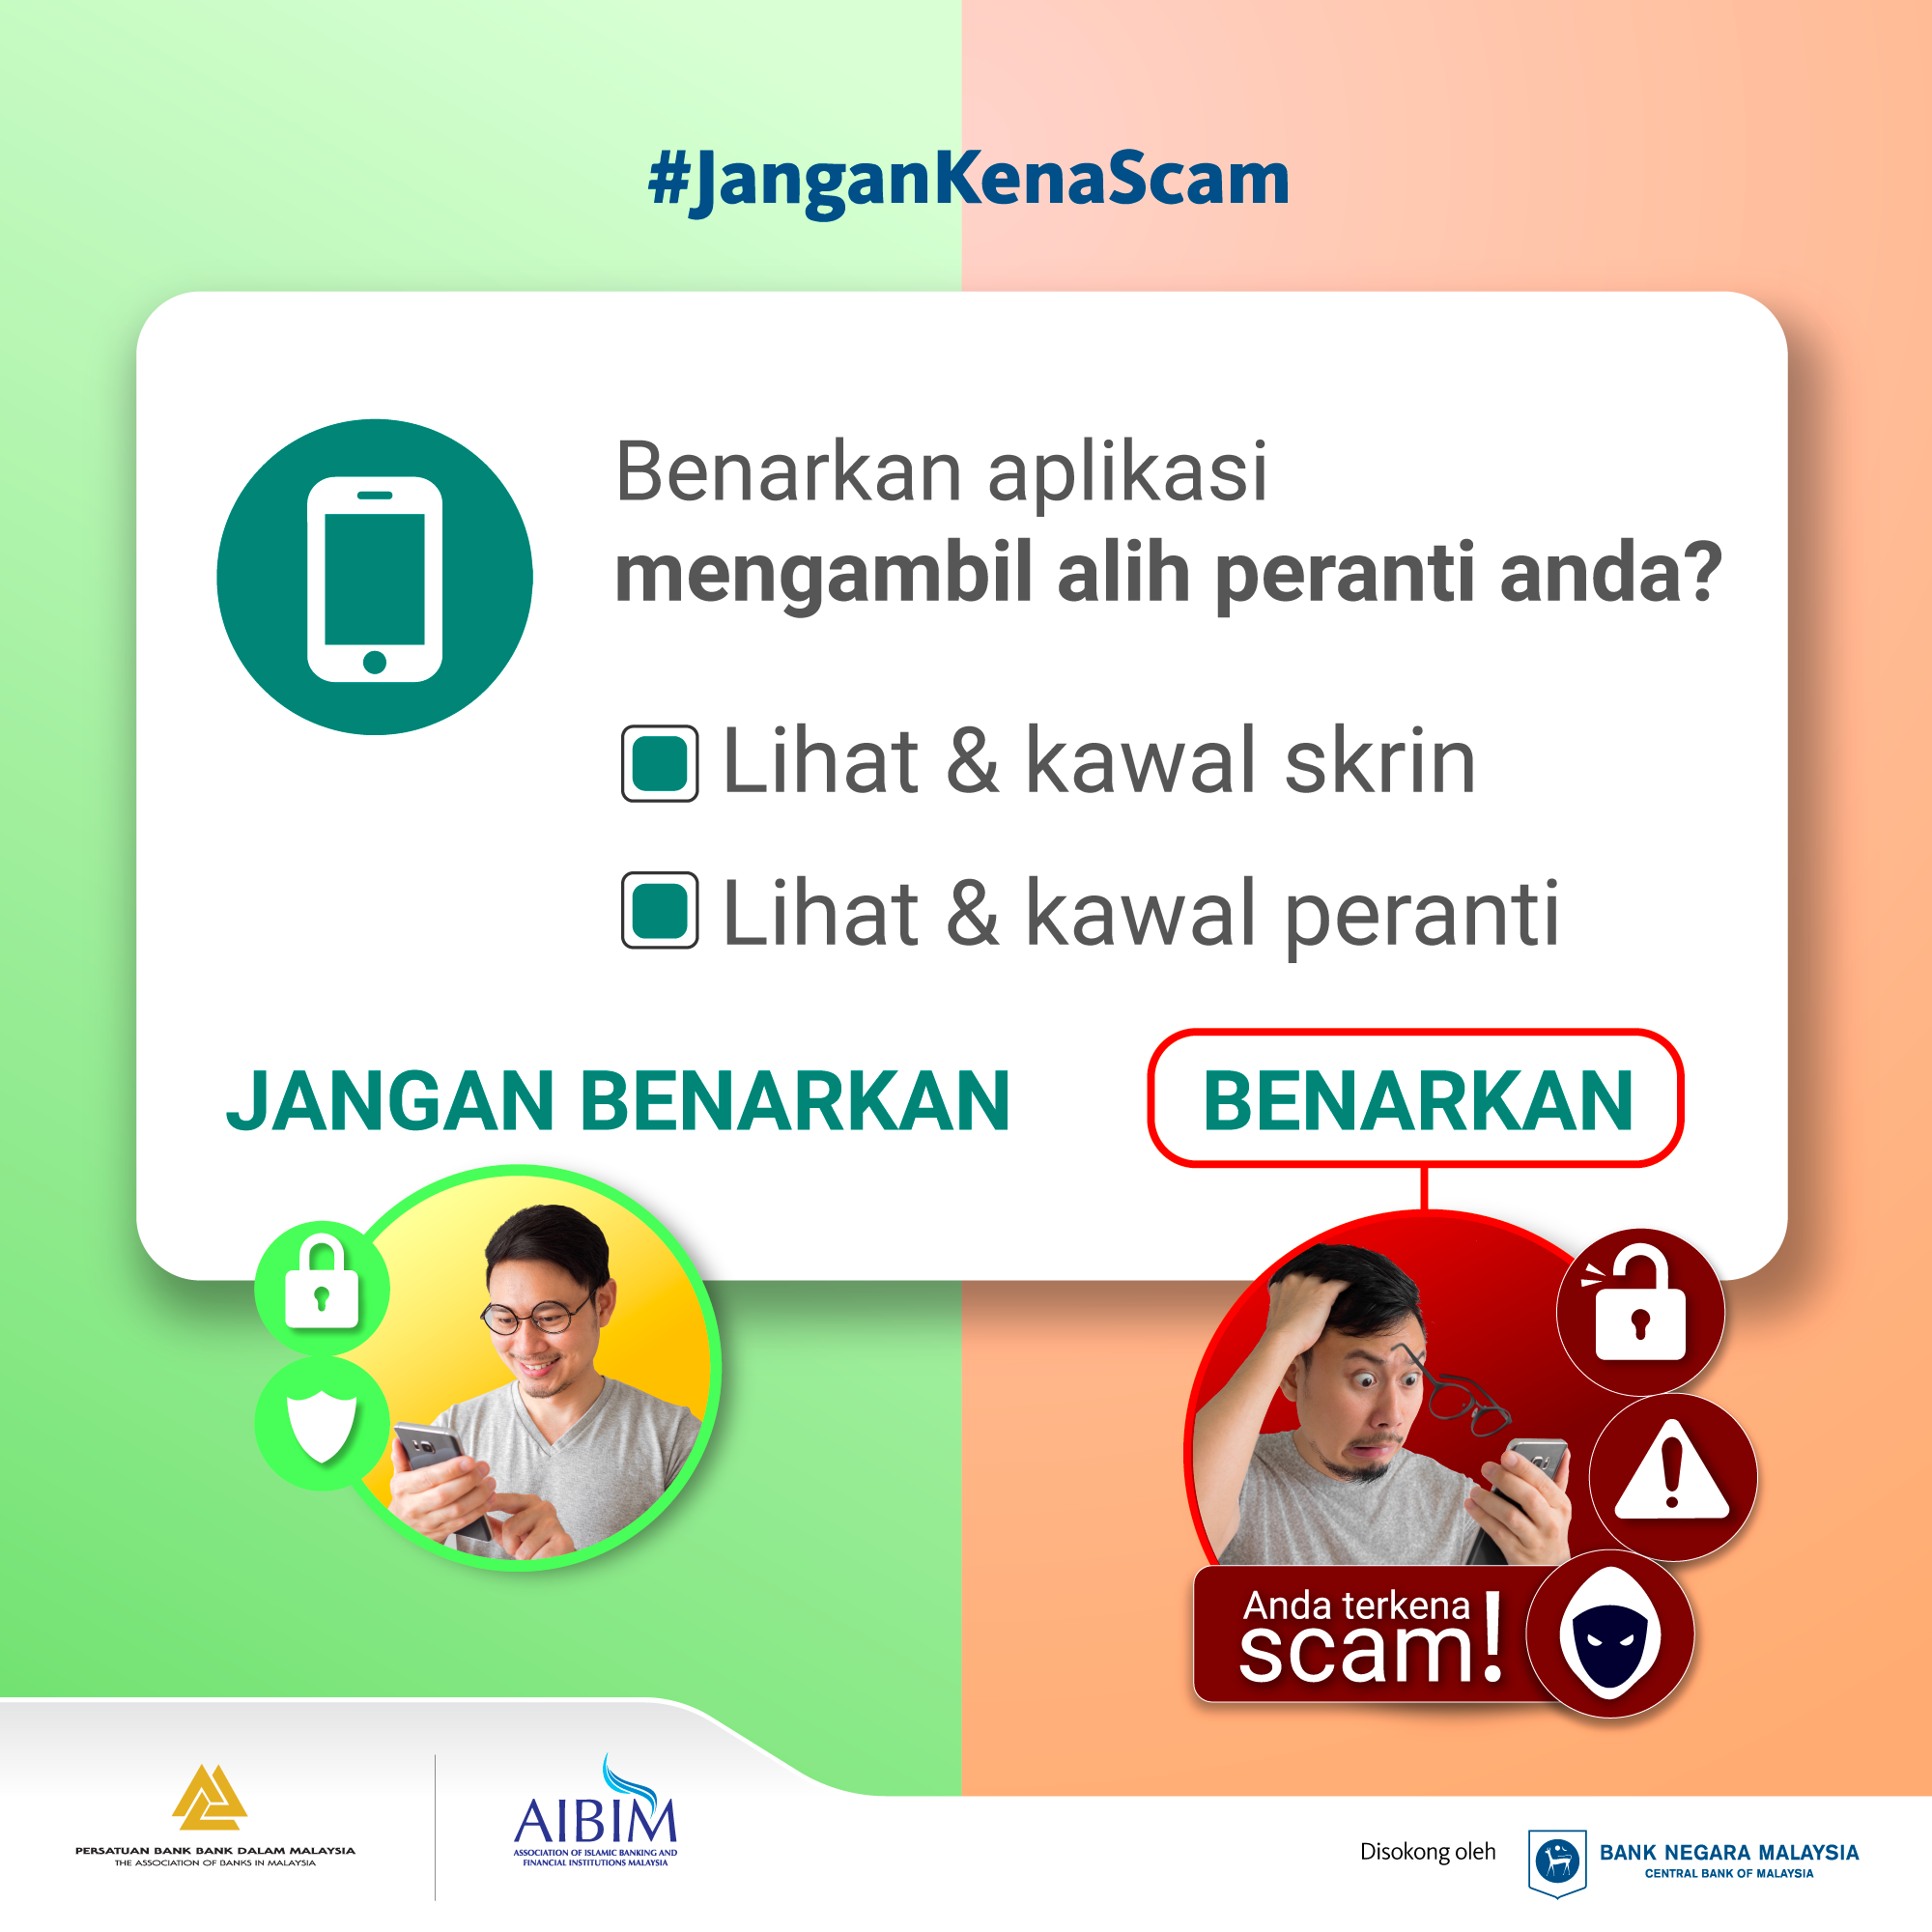 Image for #JanganKenaScam: Benarkan aplikasi mengambil alih peranti anda?